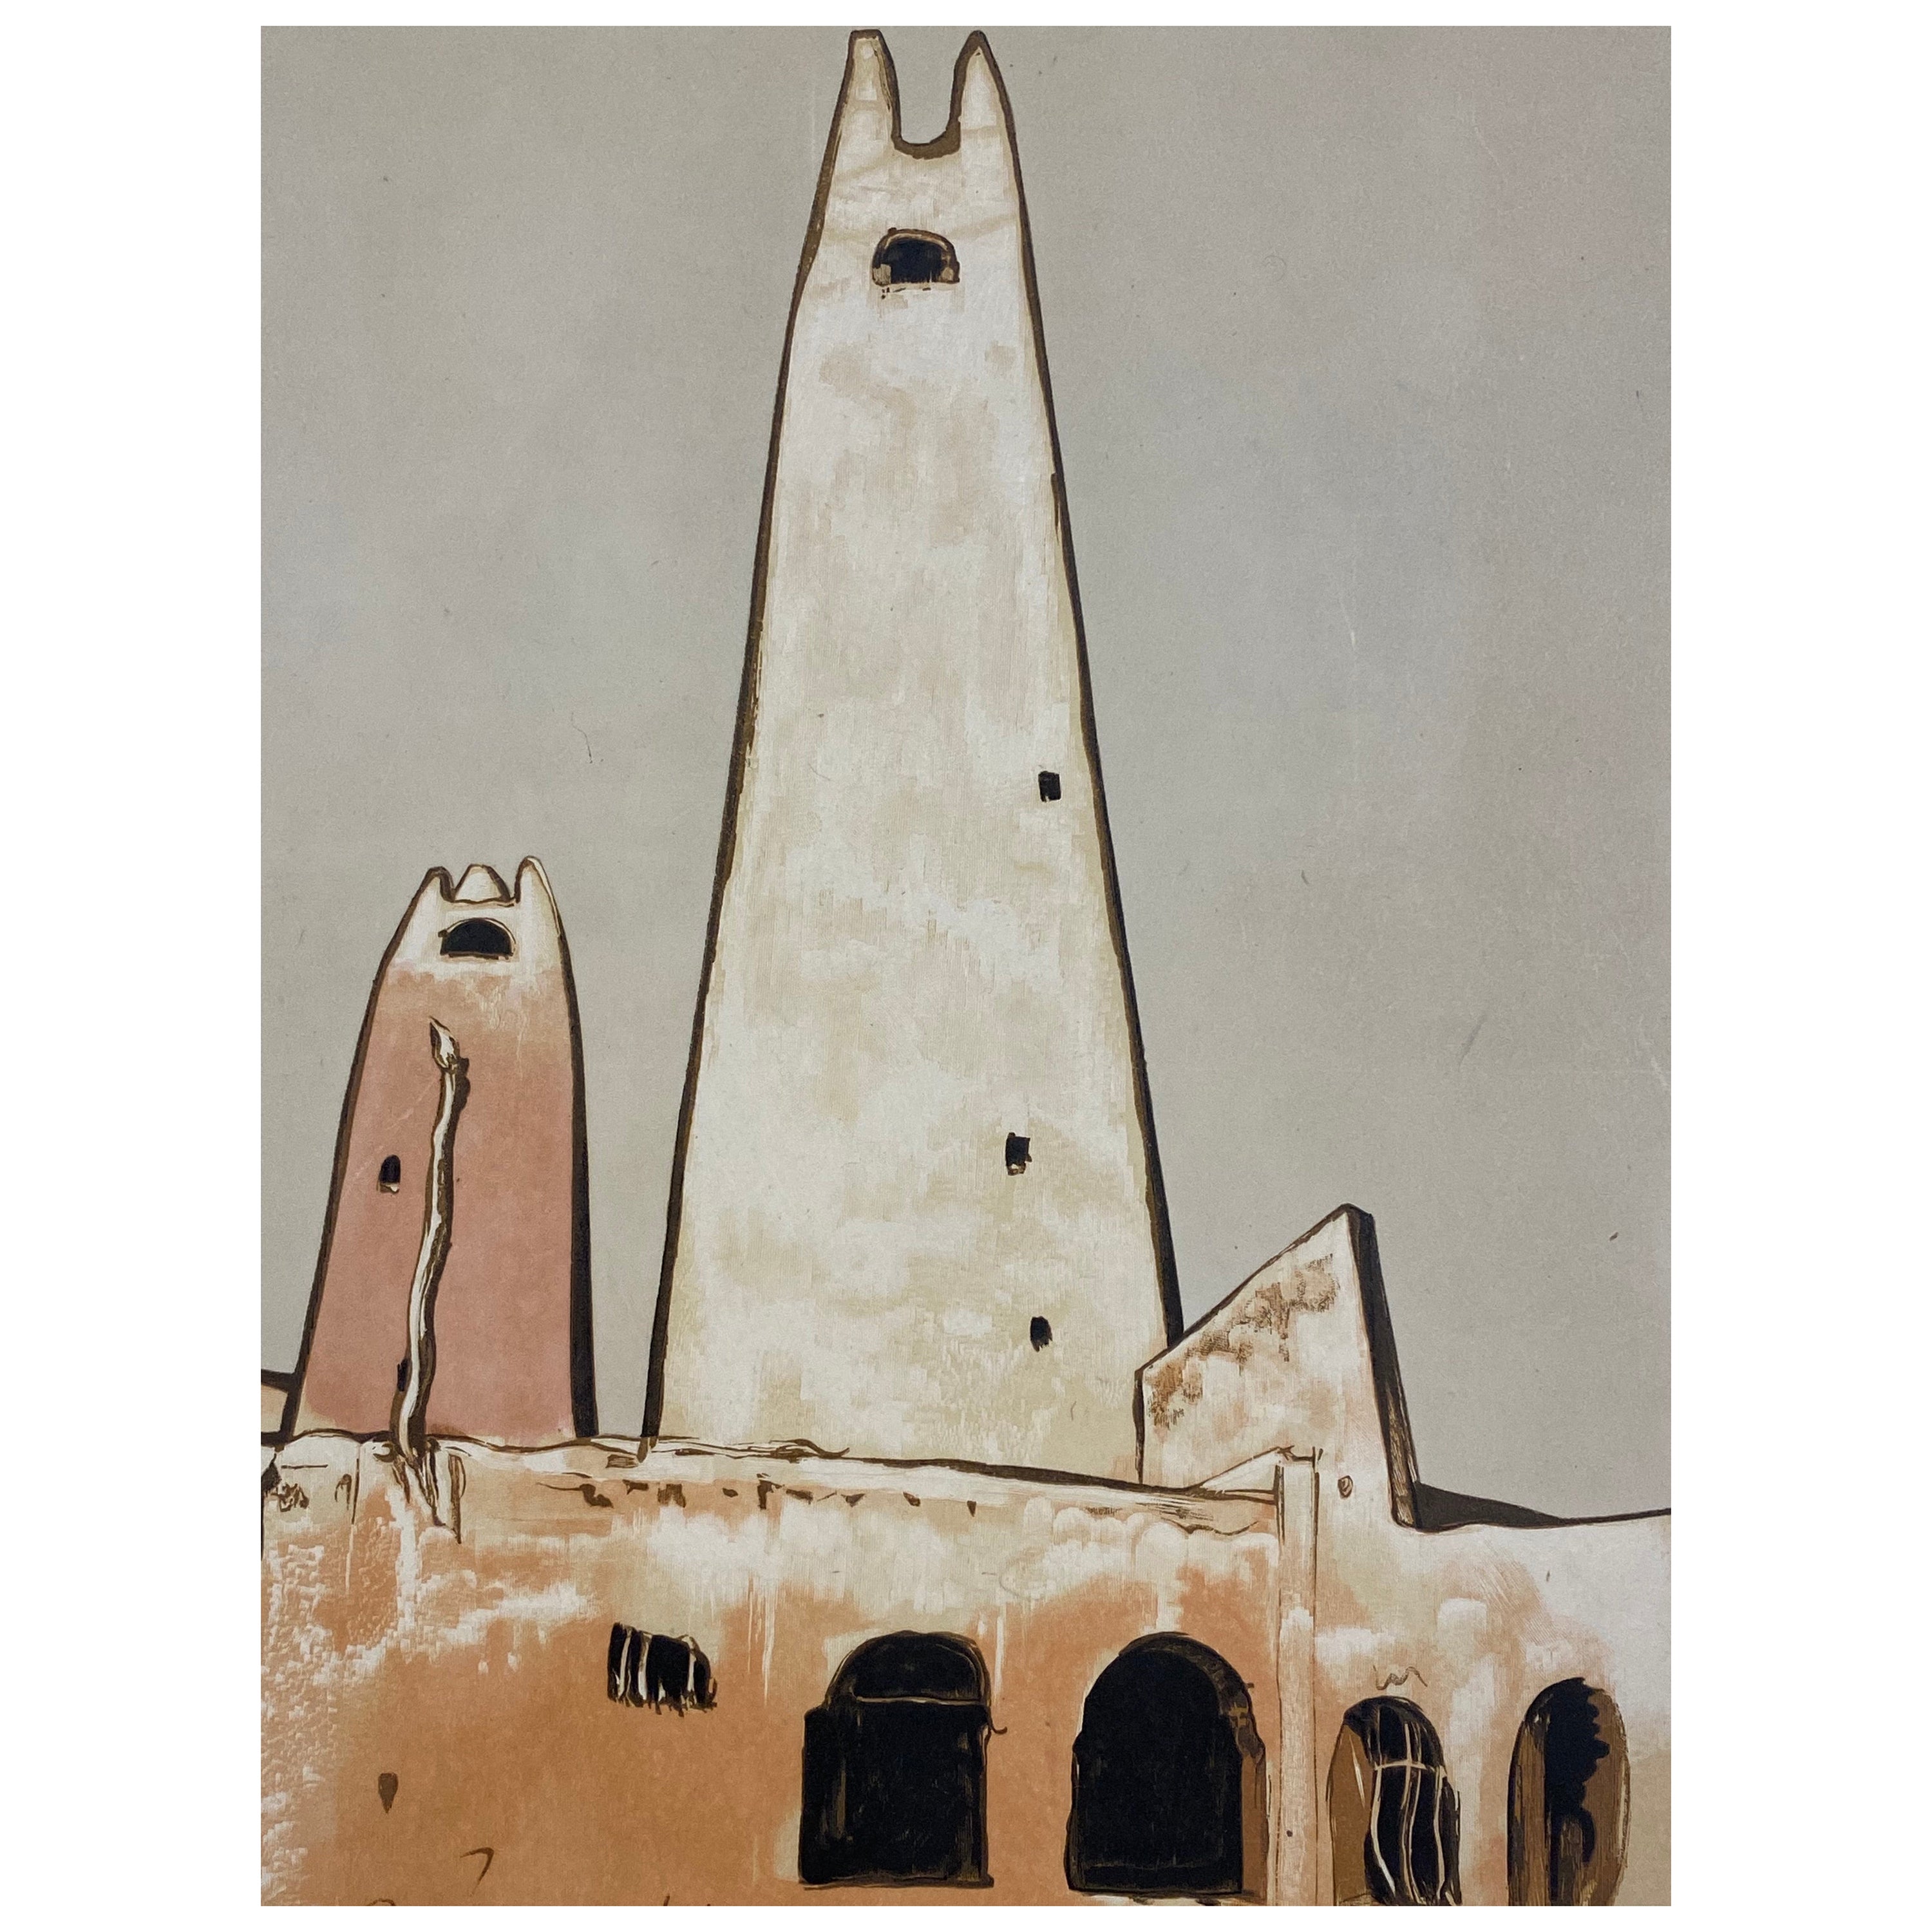 "Museum von Ghardaïa" das alte Minarett Paul Elie Dubois